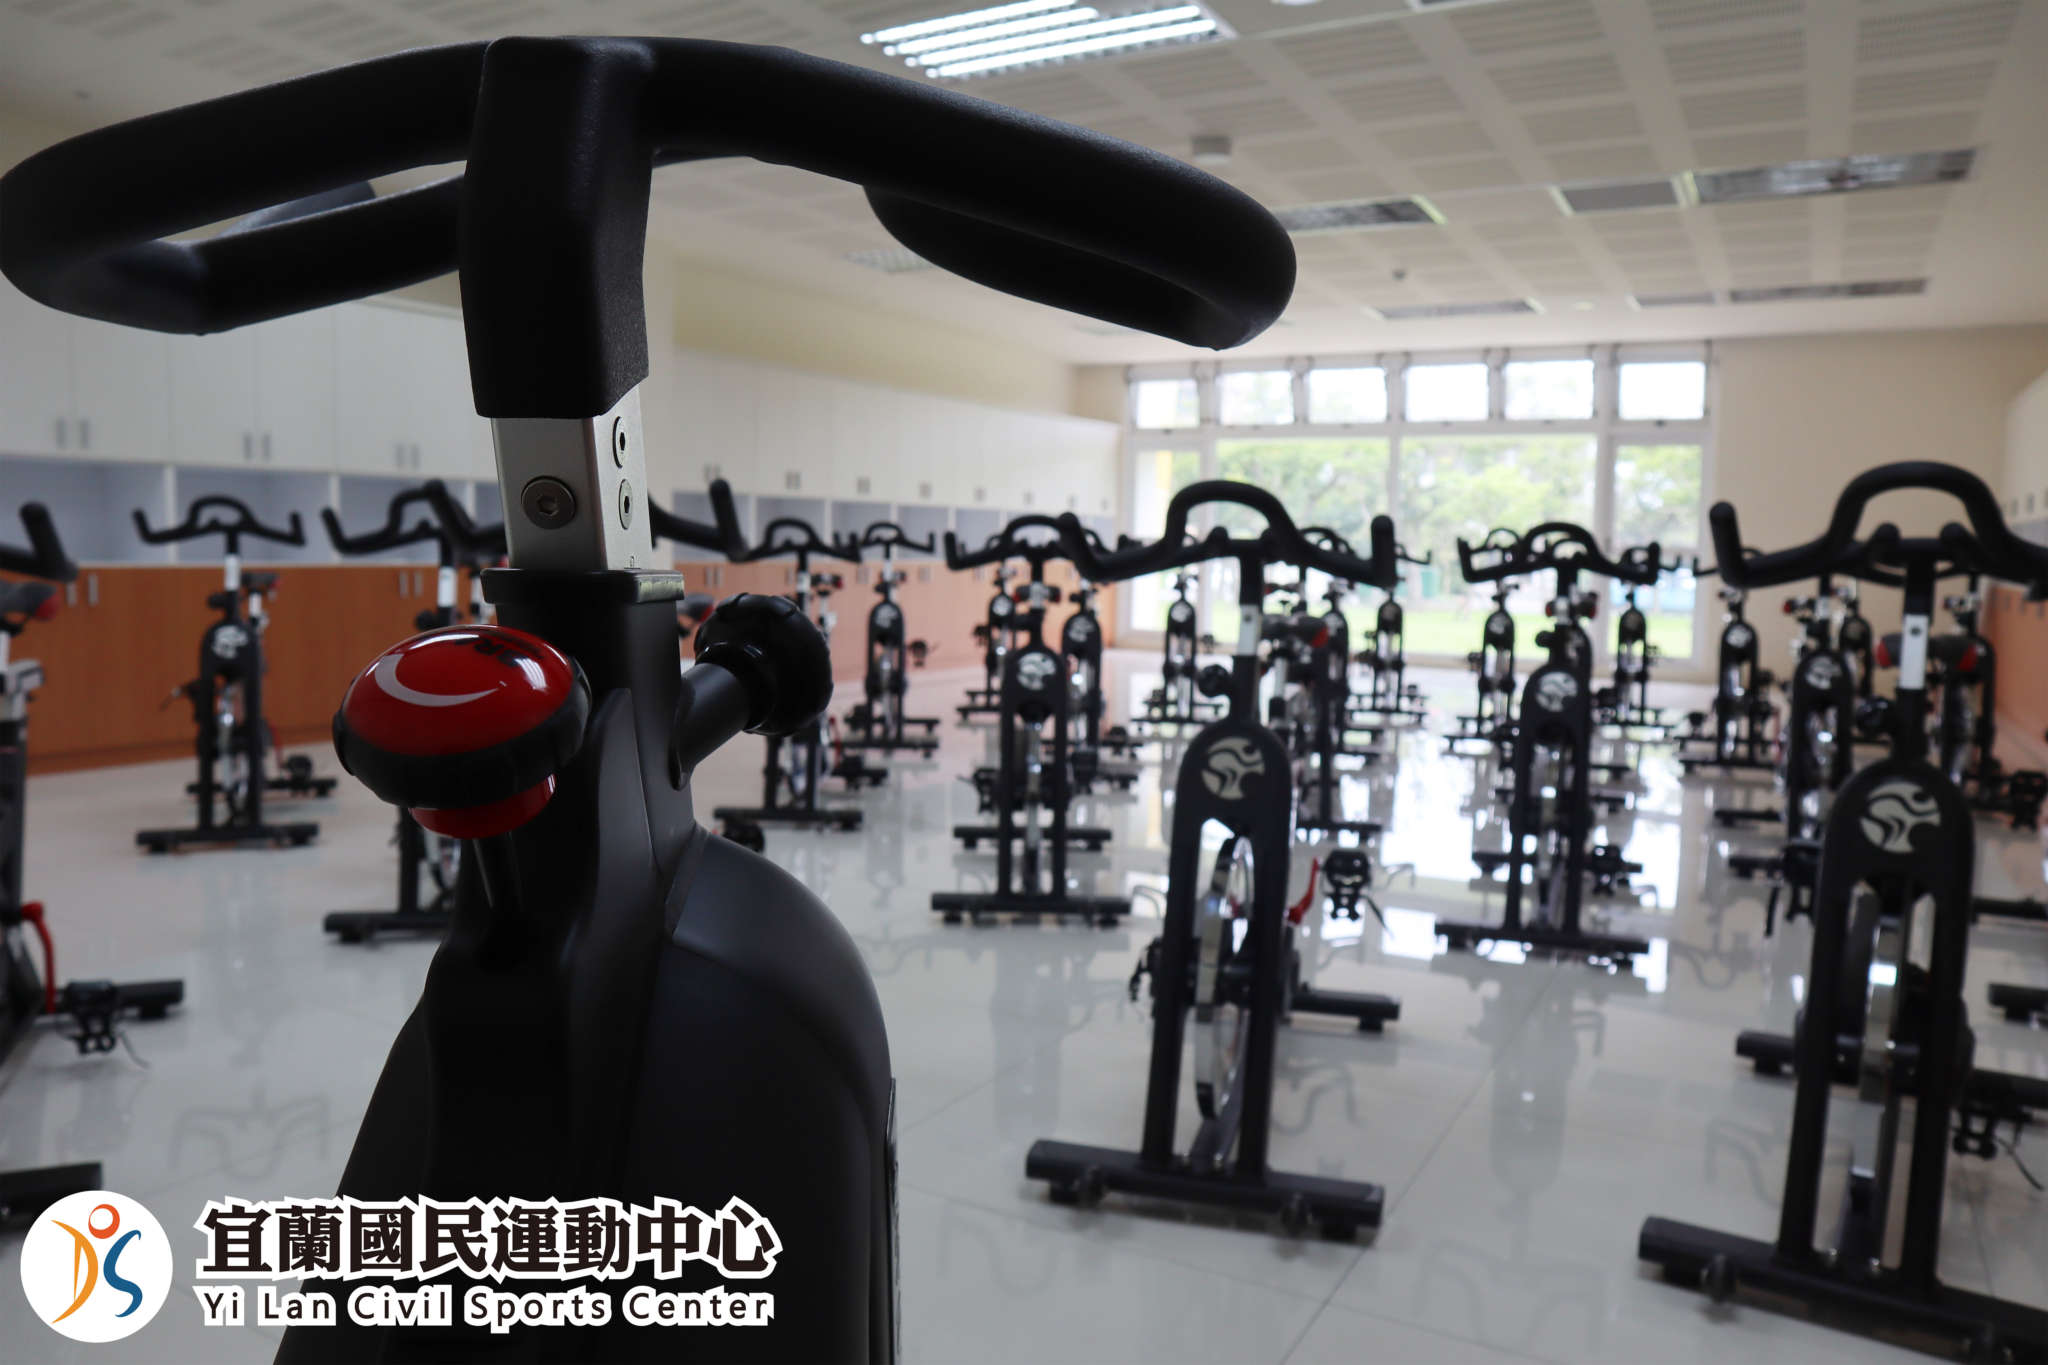 飛輪教室使用新高規格飛輪健身車(jpg)